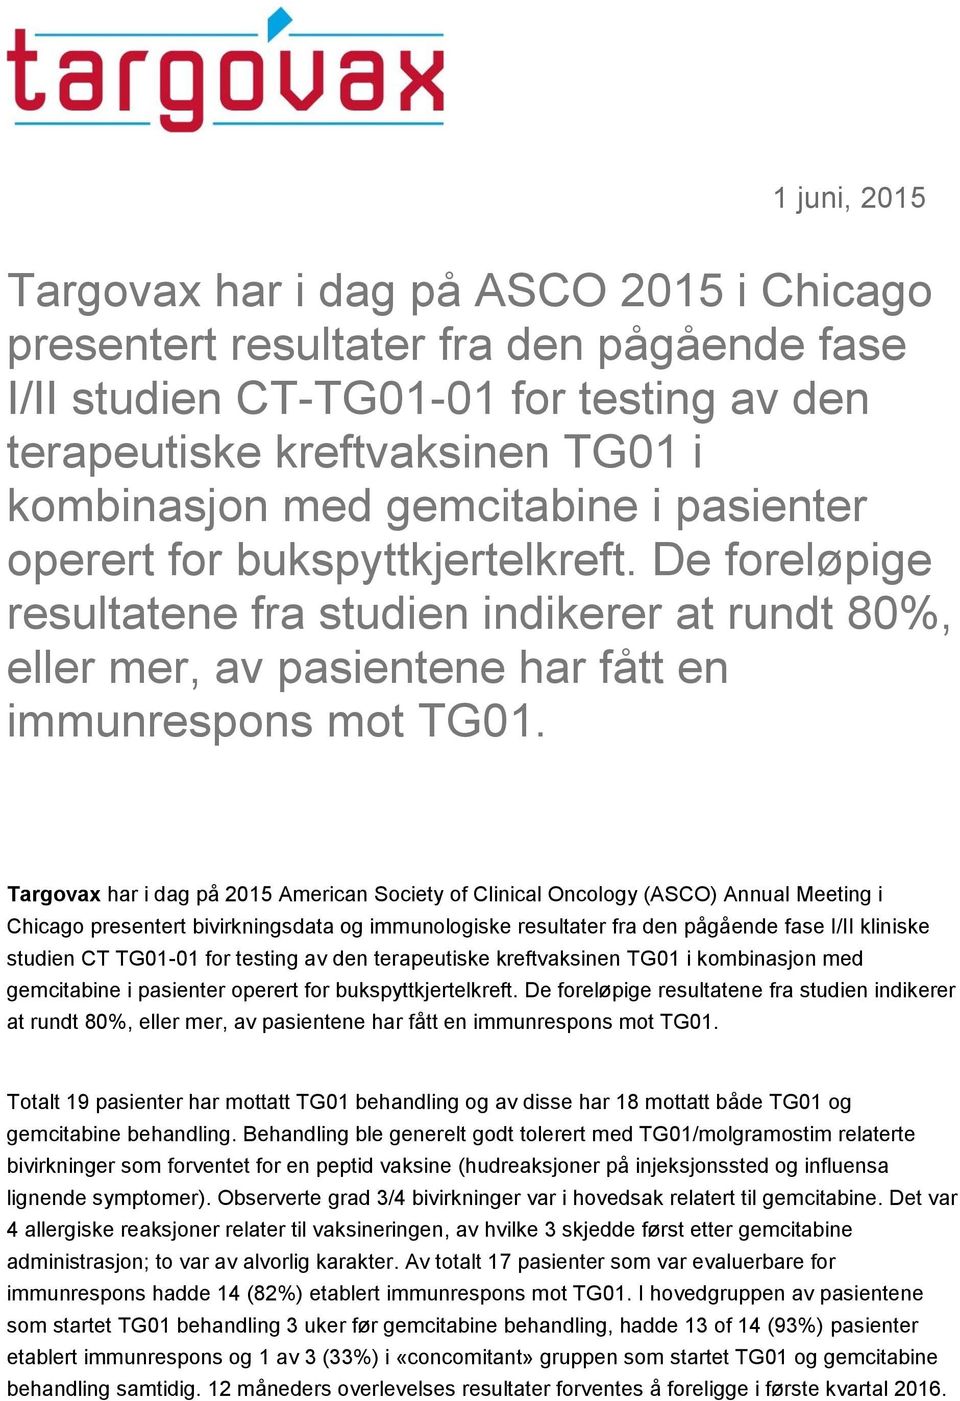 Targovax har i dag på 2015 American Society of Clinical Oncology (ASCO) Annual Meeting i Chicago presentert bivirkningsdata og immunologiske resultater fra den pågående fase I/II kliniske studien CT